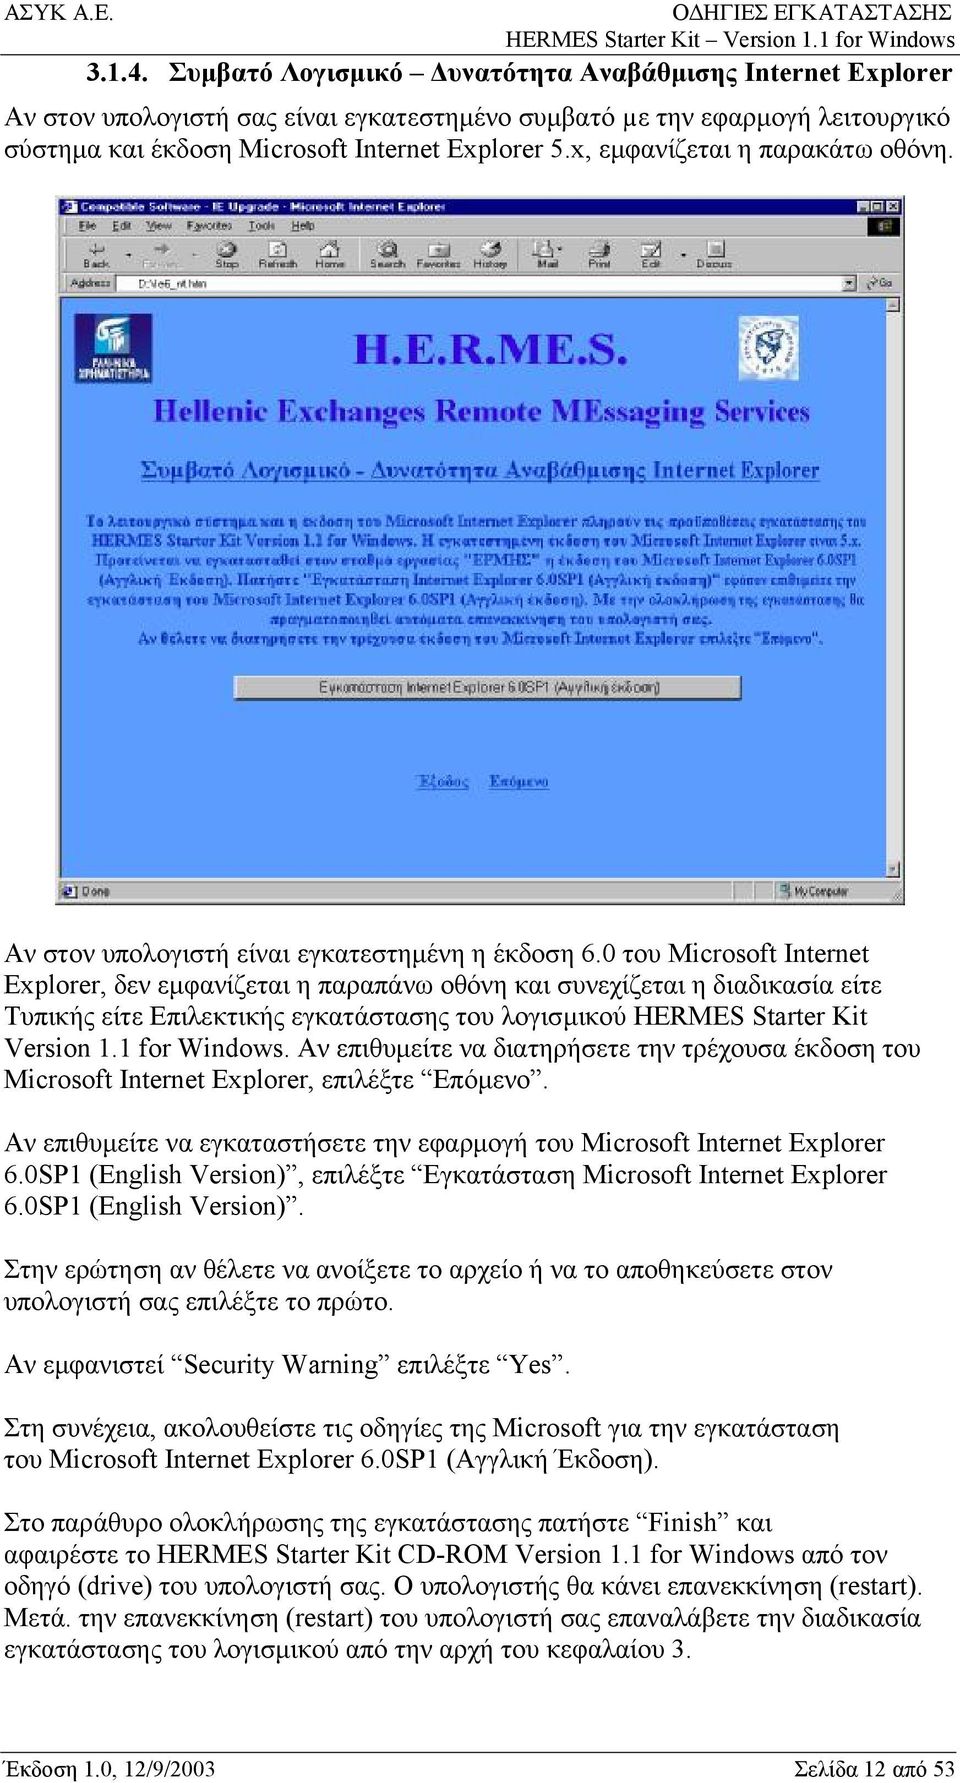 0 του Microsoft Internet Explorer, δεν εμφανίζεται η παραπάνω οθόνη και συνεχίζεται η διαδικασία είτε Τυπικής είτε Επιλεκτικής εγκατάστασης του λογισμικού HERMES Starter Kit Version 1.1 for Windows.